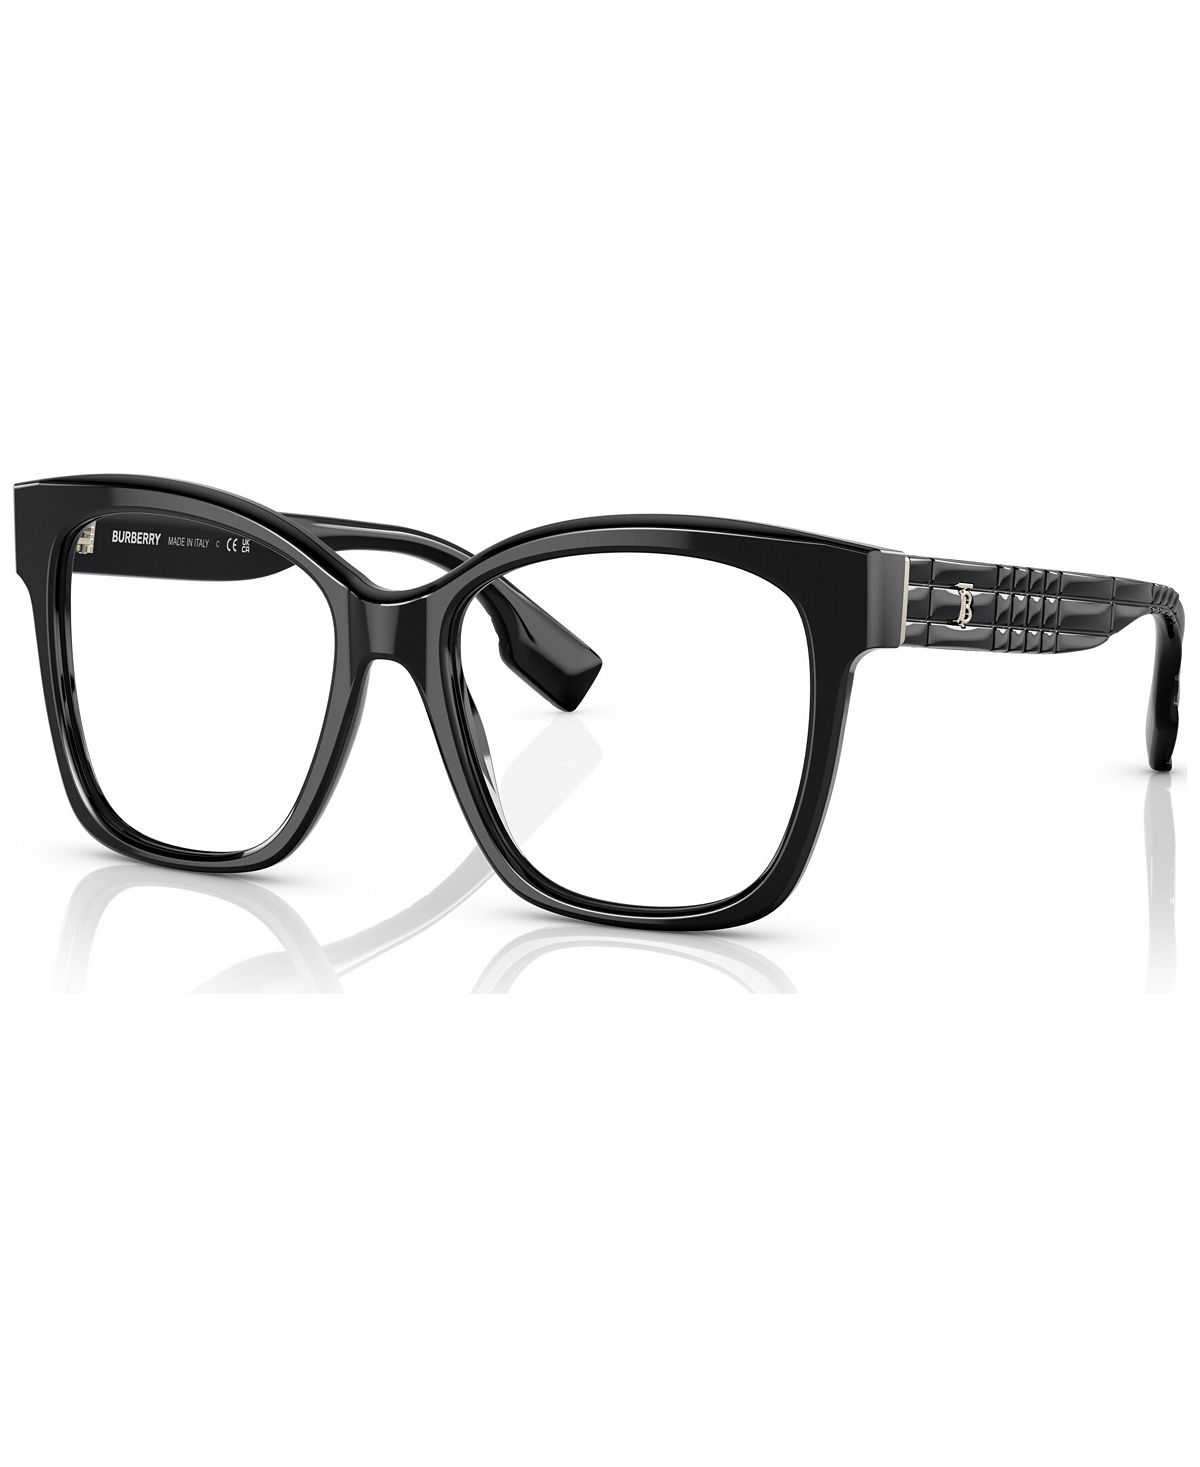 Женские квадратные очки, BE236351-O Burberry, черный женские квадратные очки be2376 52 burberry черный